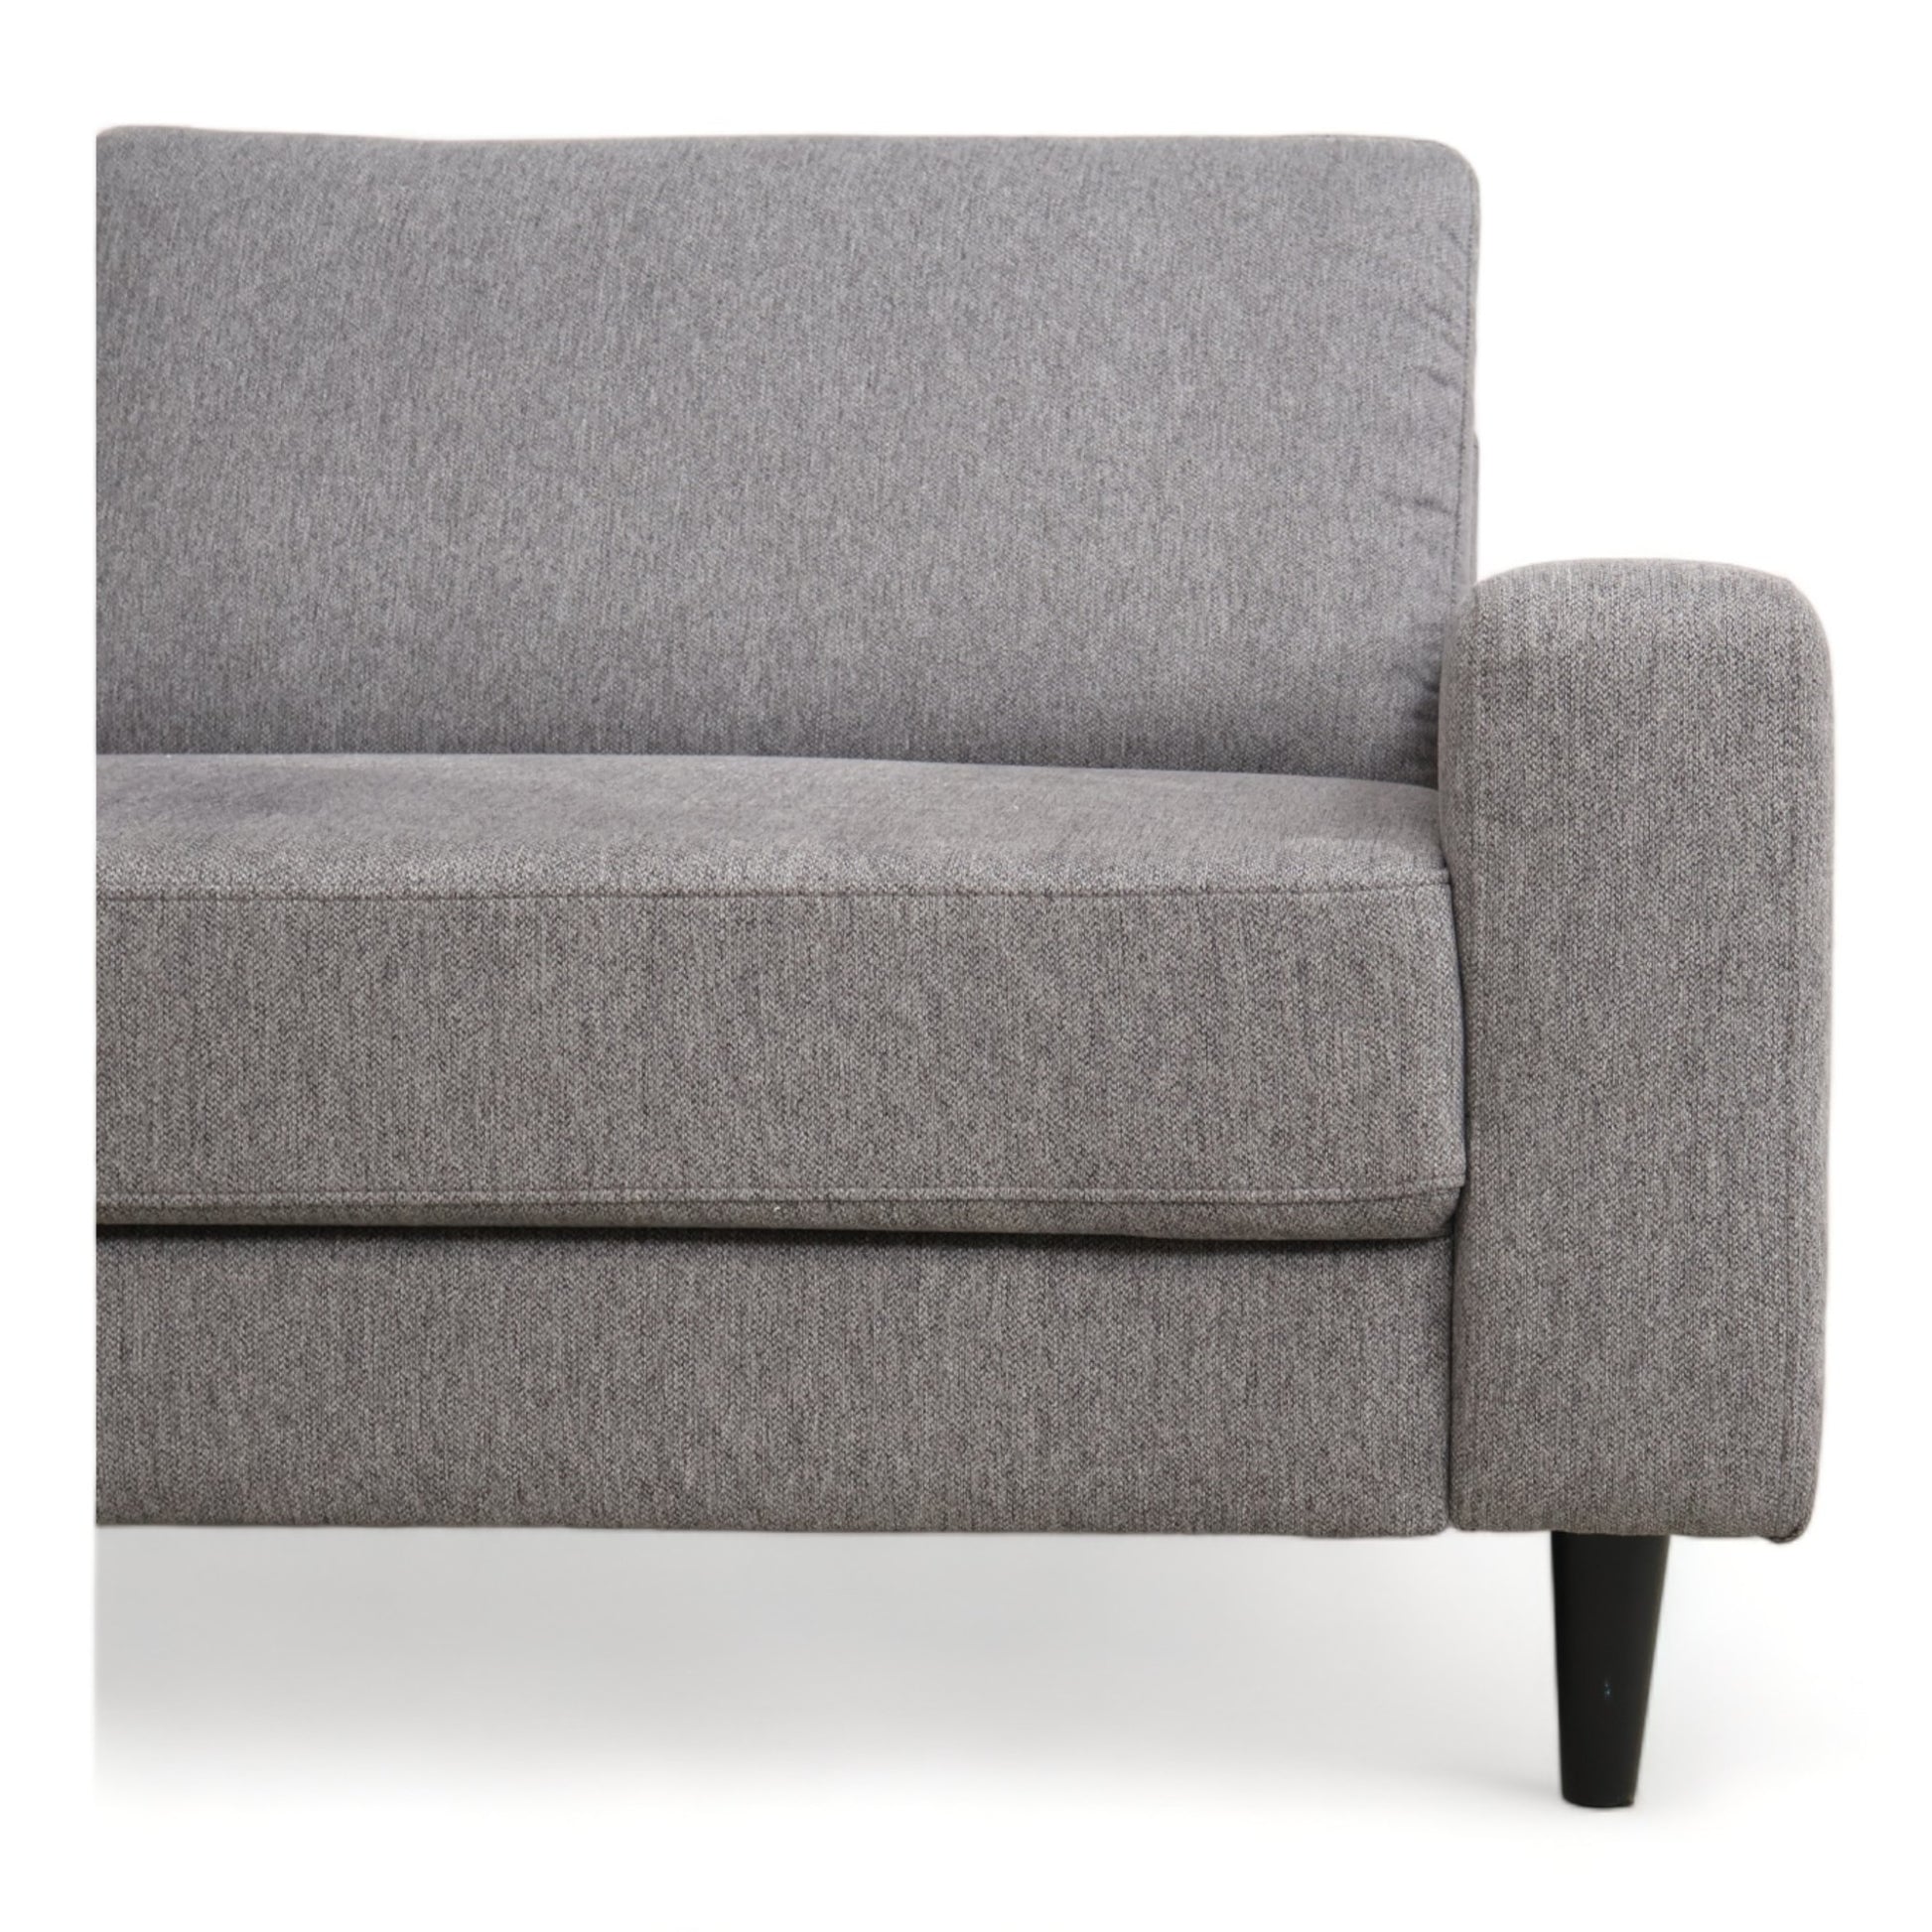 Nyrenset | Grå Etta 3-seter sofa fra A-Møbler